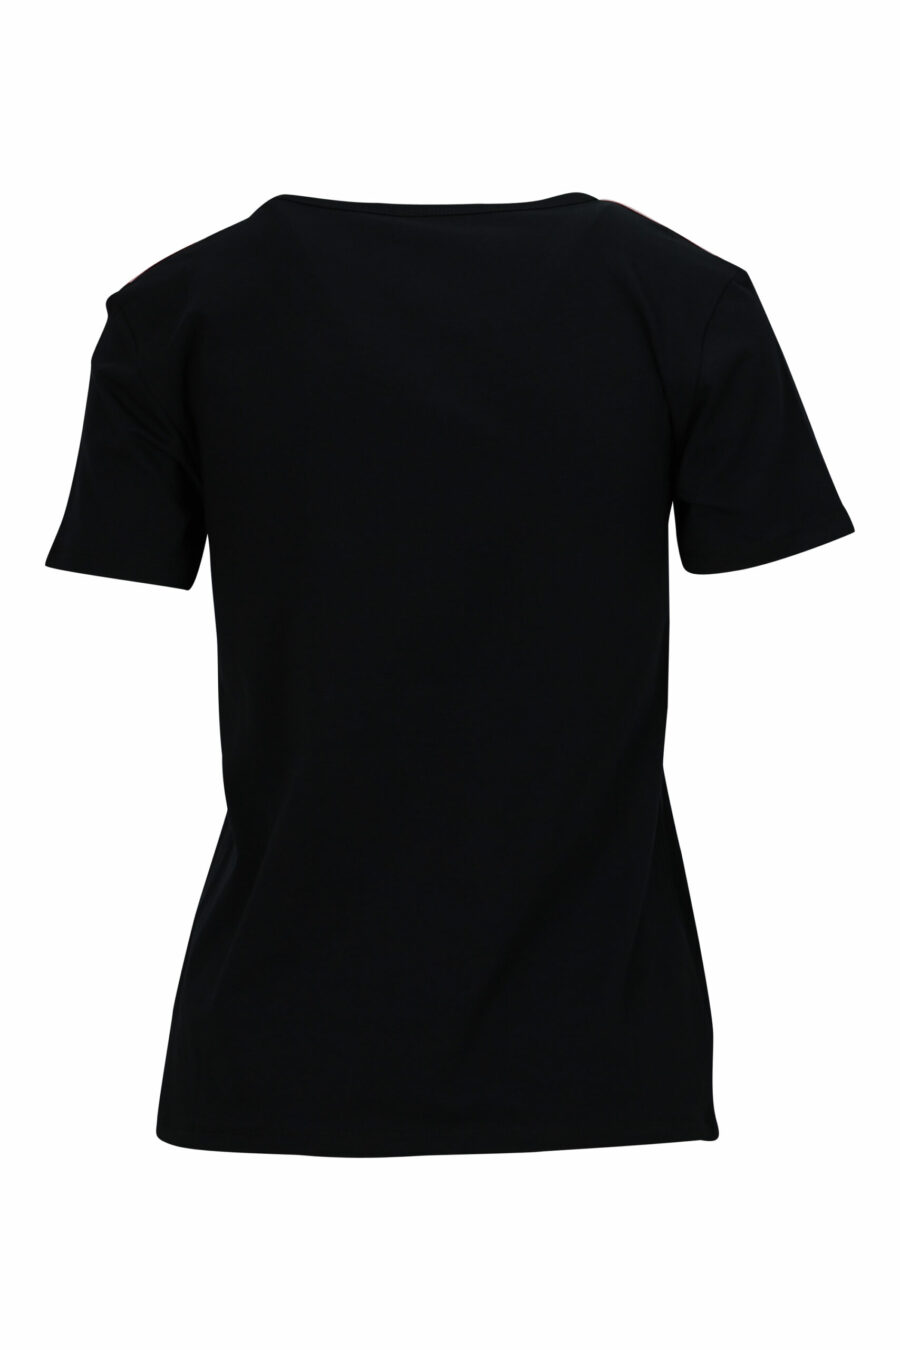 T-shirt noir avec logo monochrome sur les épaules - 667113696690 1 scaled